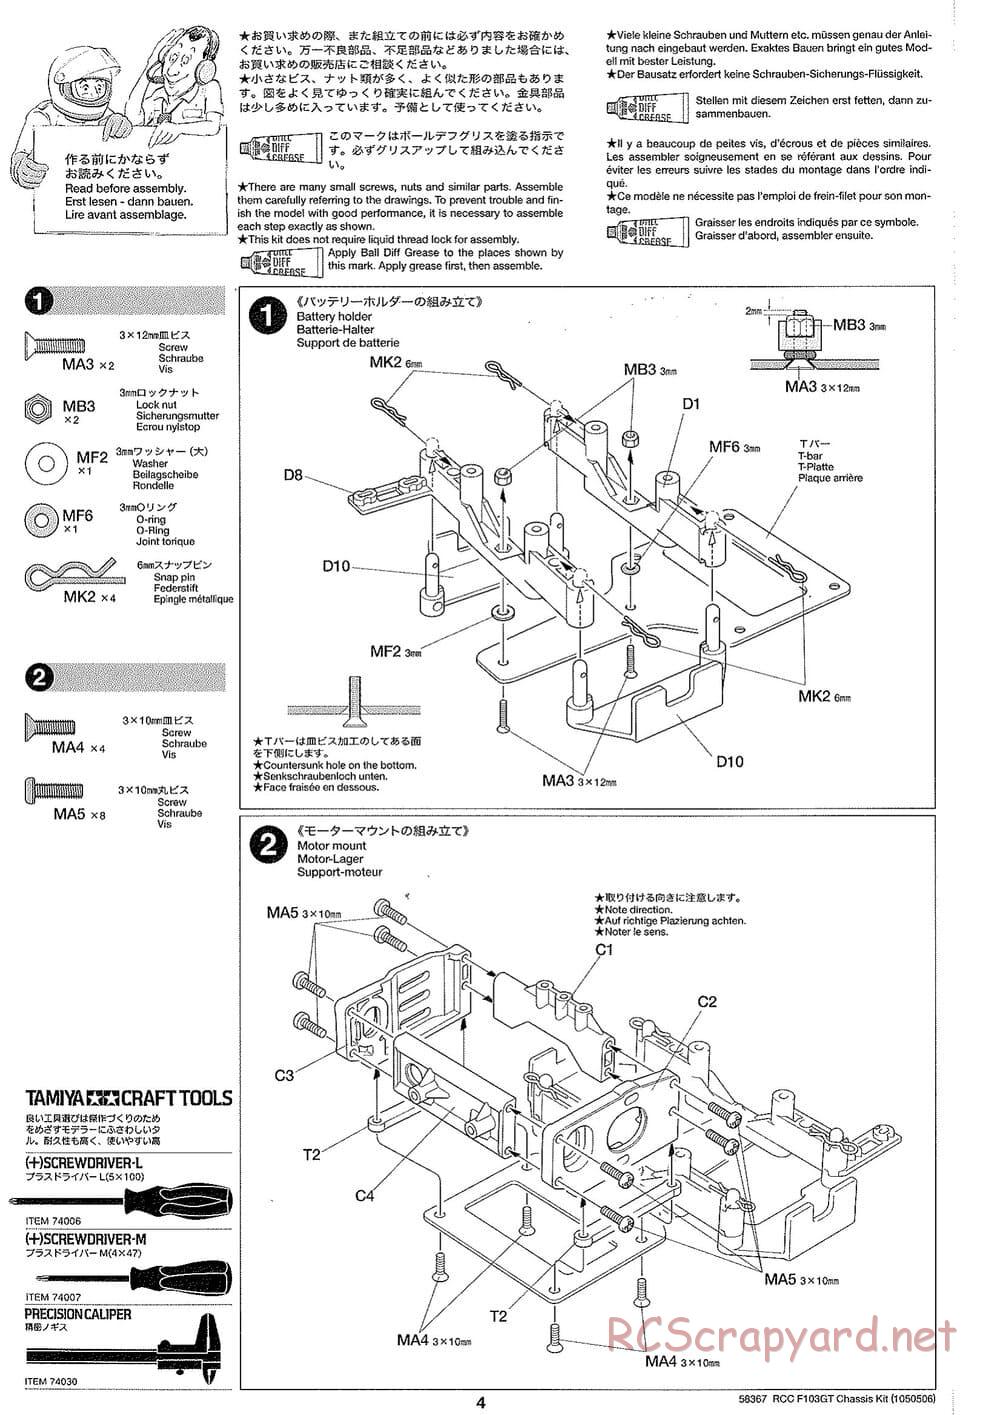 Tamiya - F103GT Chassis Kit - Manual - Page 4